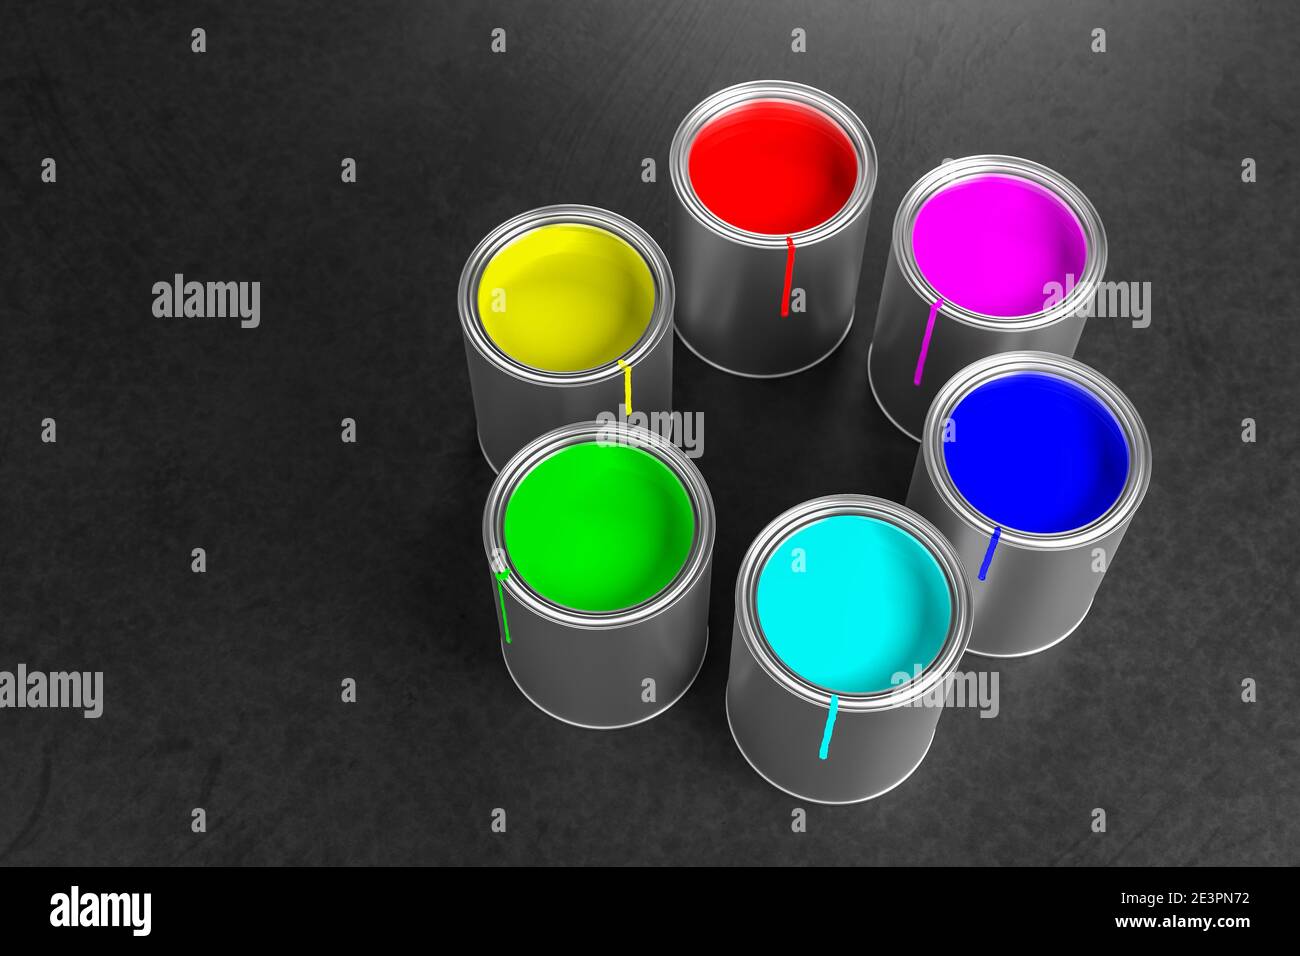 Pentole di vernice che costruiscono una ruota dei colori con i colori primari RGB del modello di colori additivi (rosso, verde, blu) utilizzato per i monitor e il colore di processo CMY Foto Stock